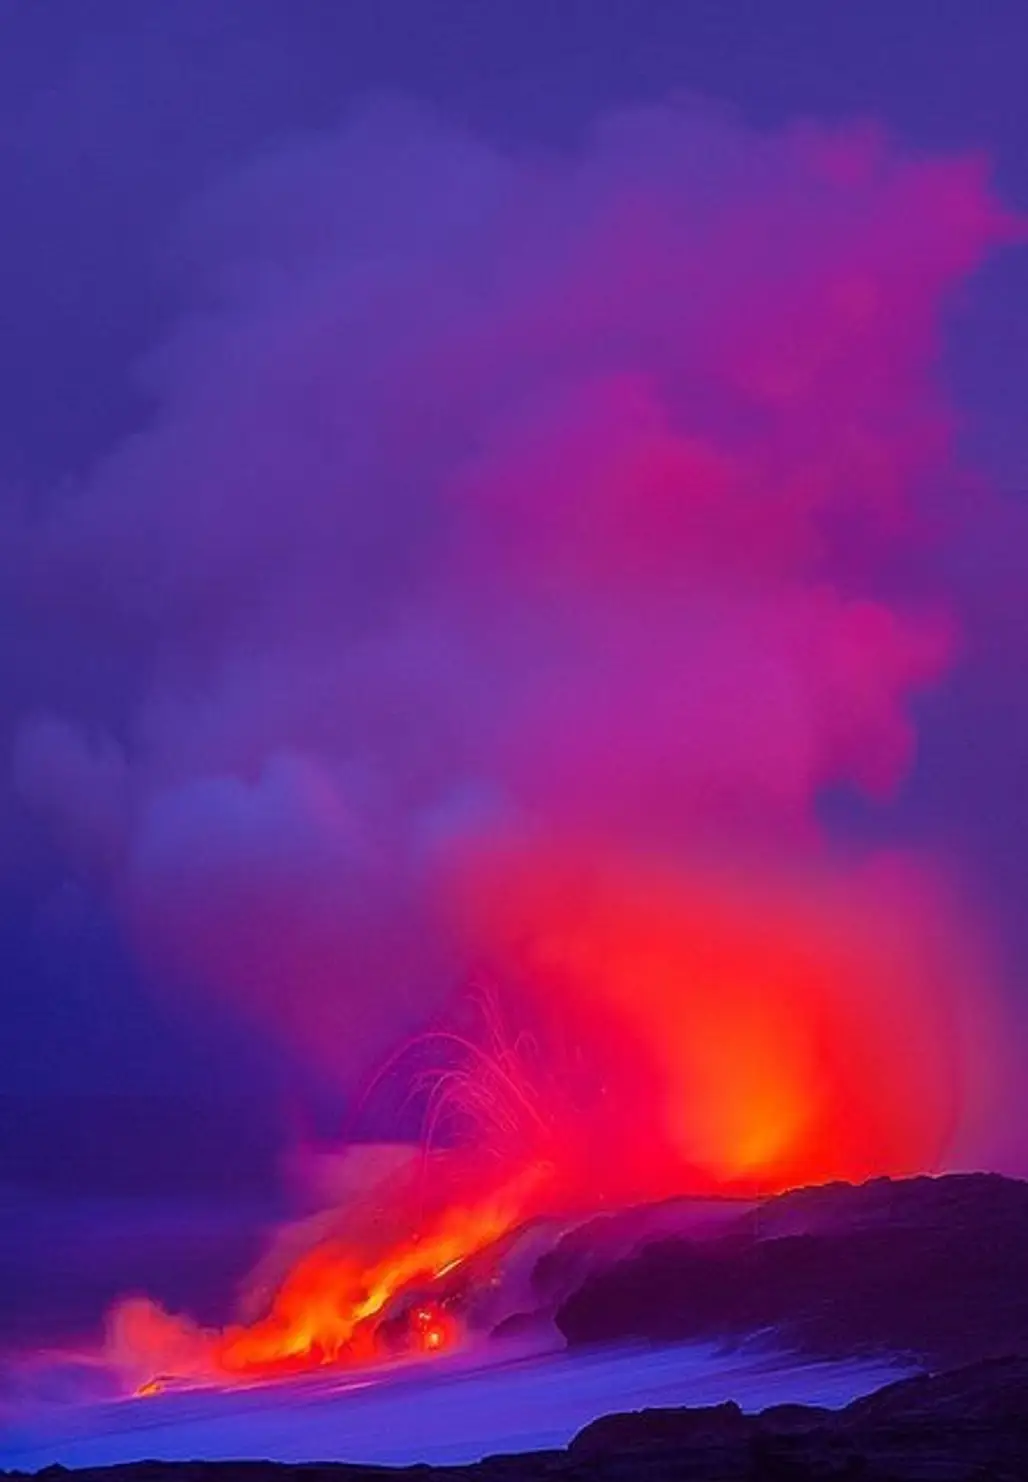 Mount Kilauea, Hawaii